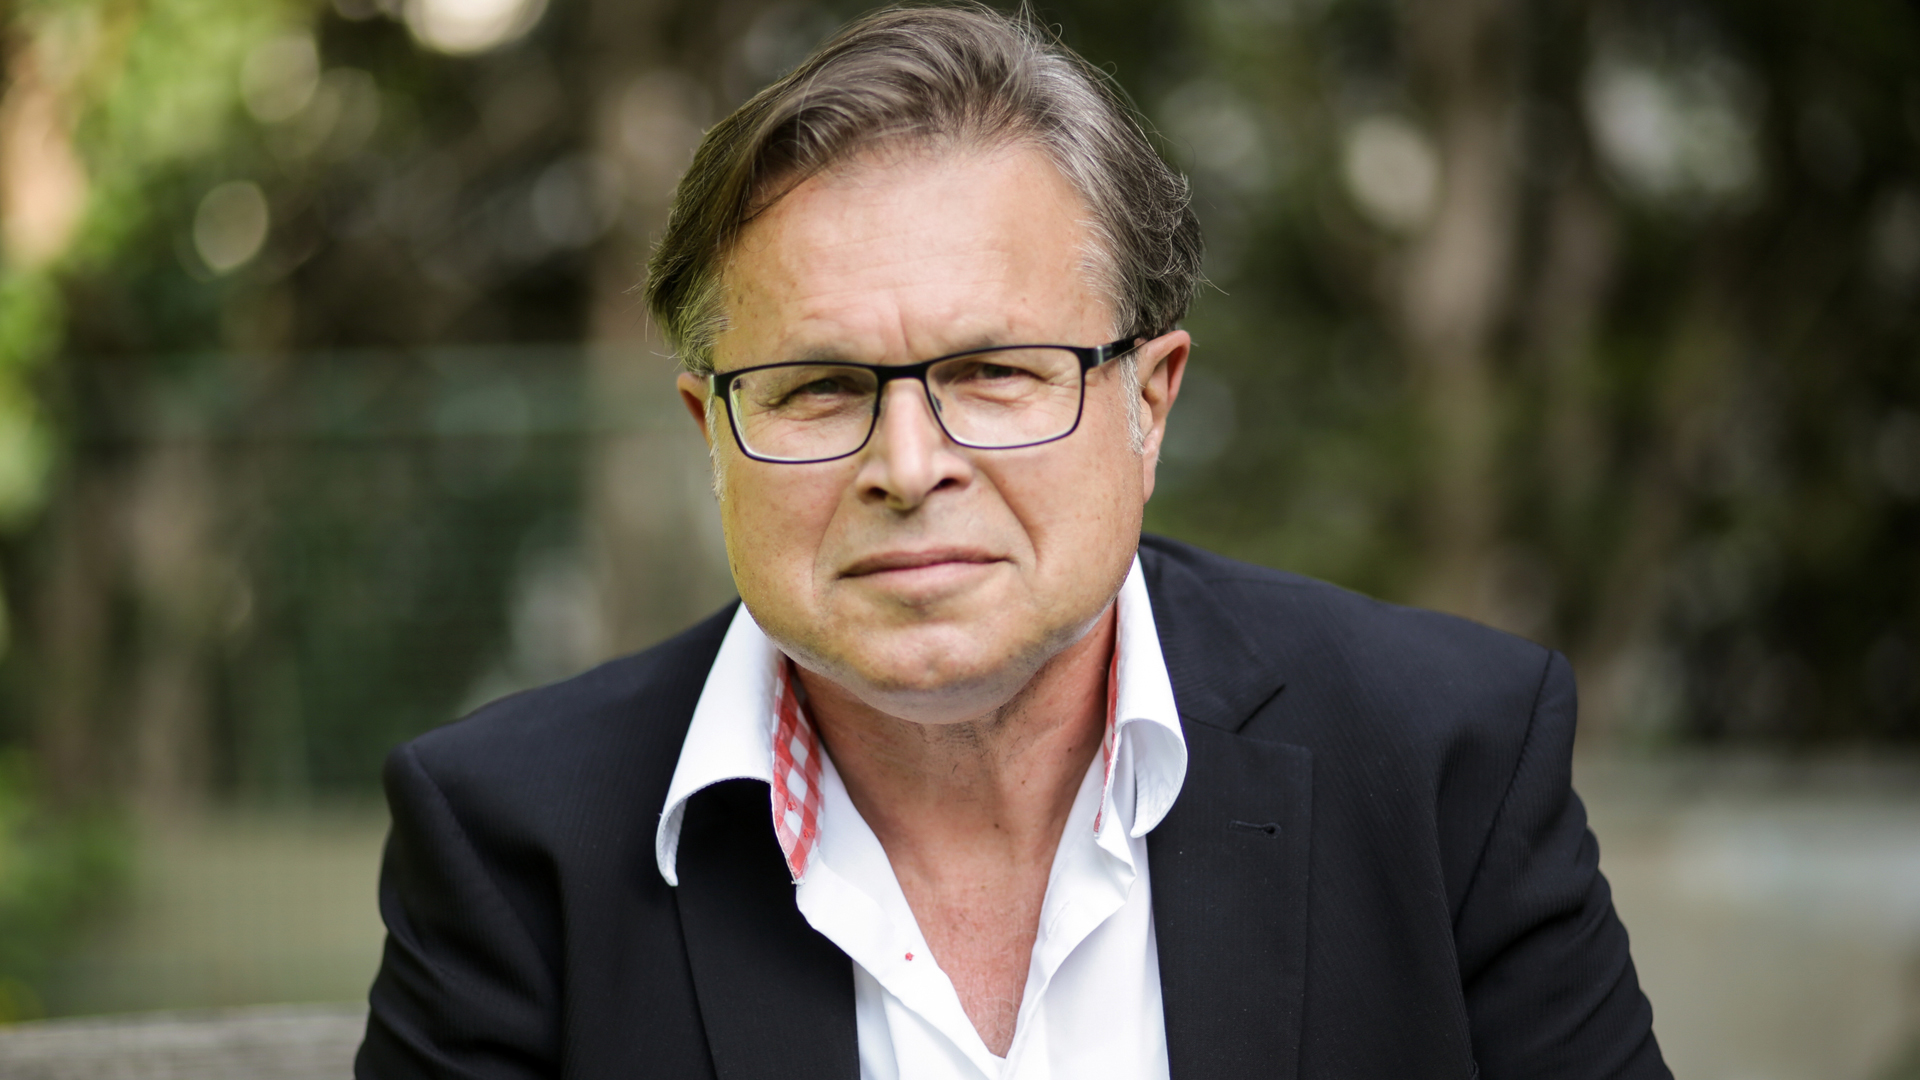 Der Theologe Jürgen Mette leitete viele Jahre die Stiftung Marburger Medien. 2013 veröffentlichte er das Buch „Alles außer Mikado – Leben trotz Parkinson“, das es auf die Spiegel-Bestsellerliste schaffte.